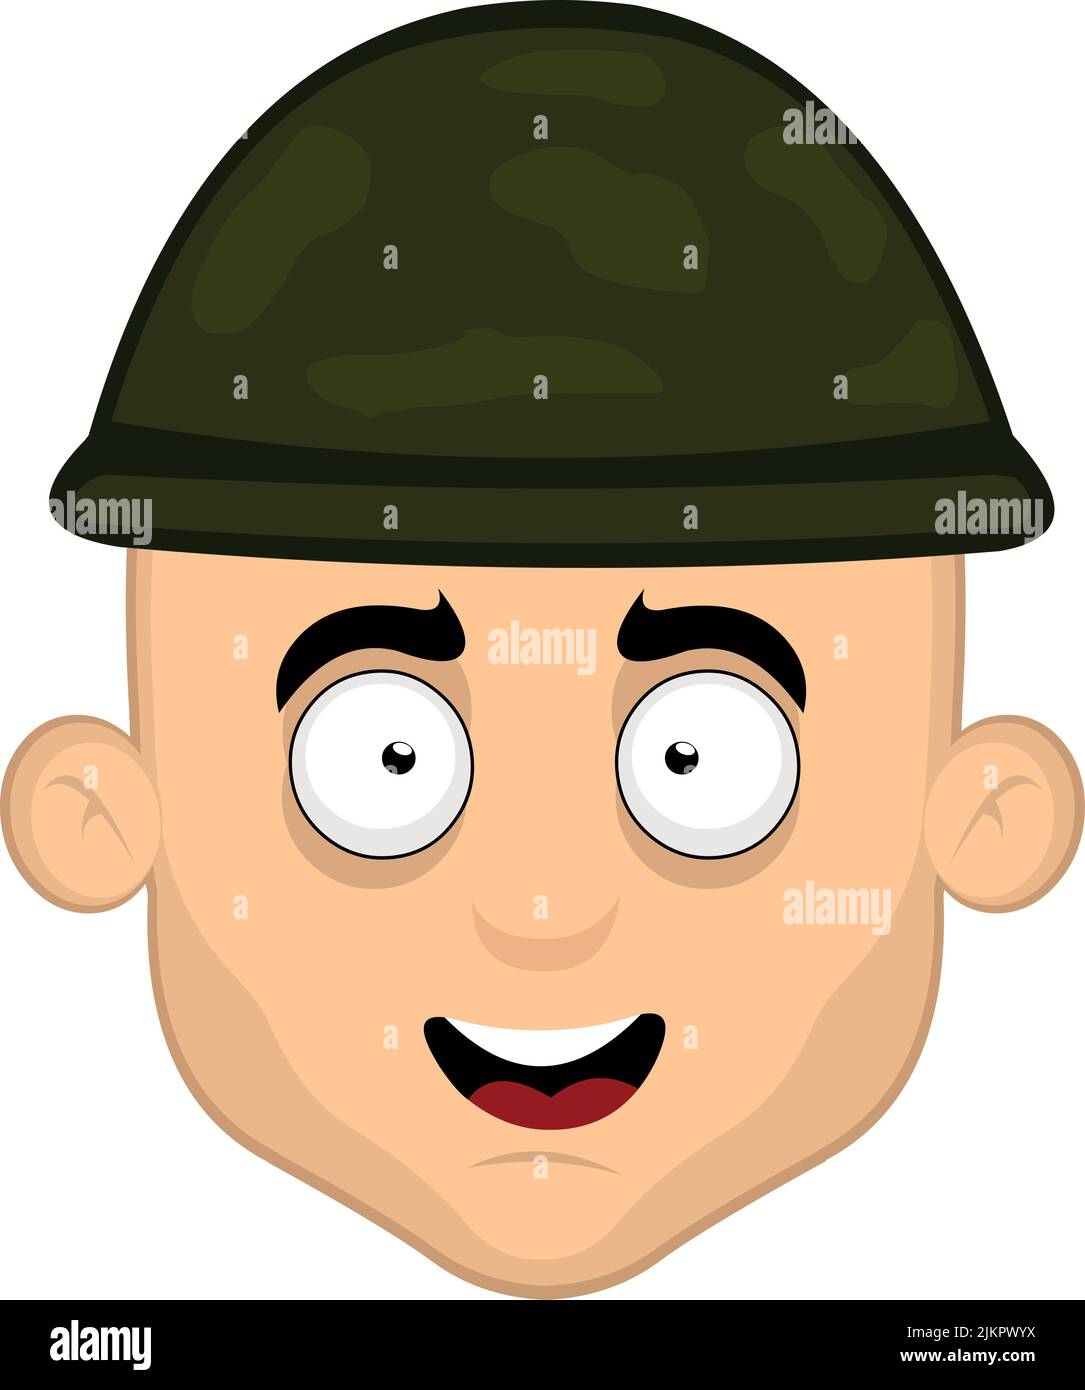 Illustration vectorielle du visage d'un soldat de dessin animé avec une expression heureuse Illustration de Vecteur